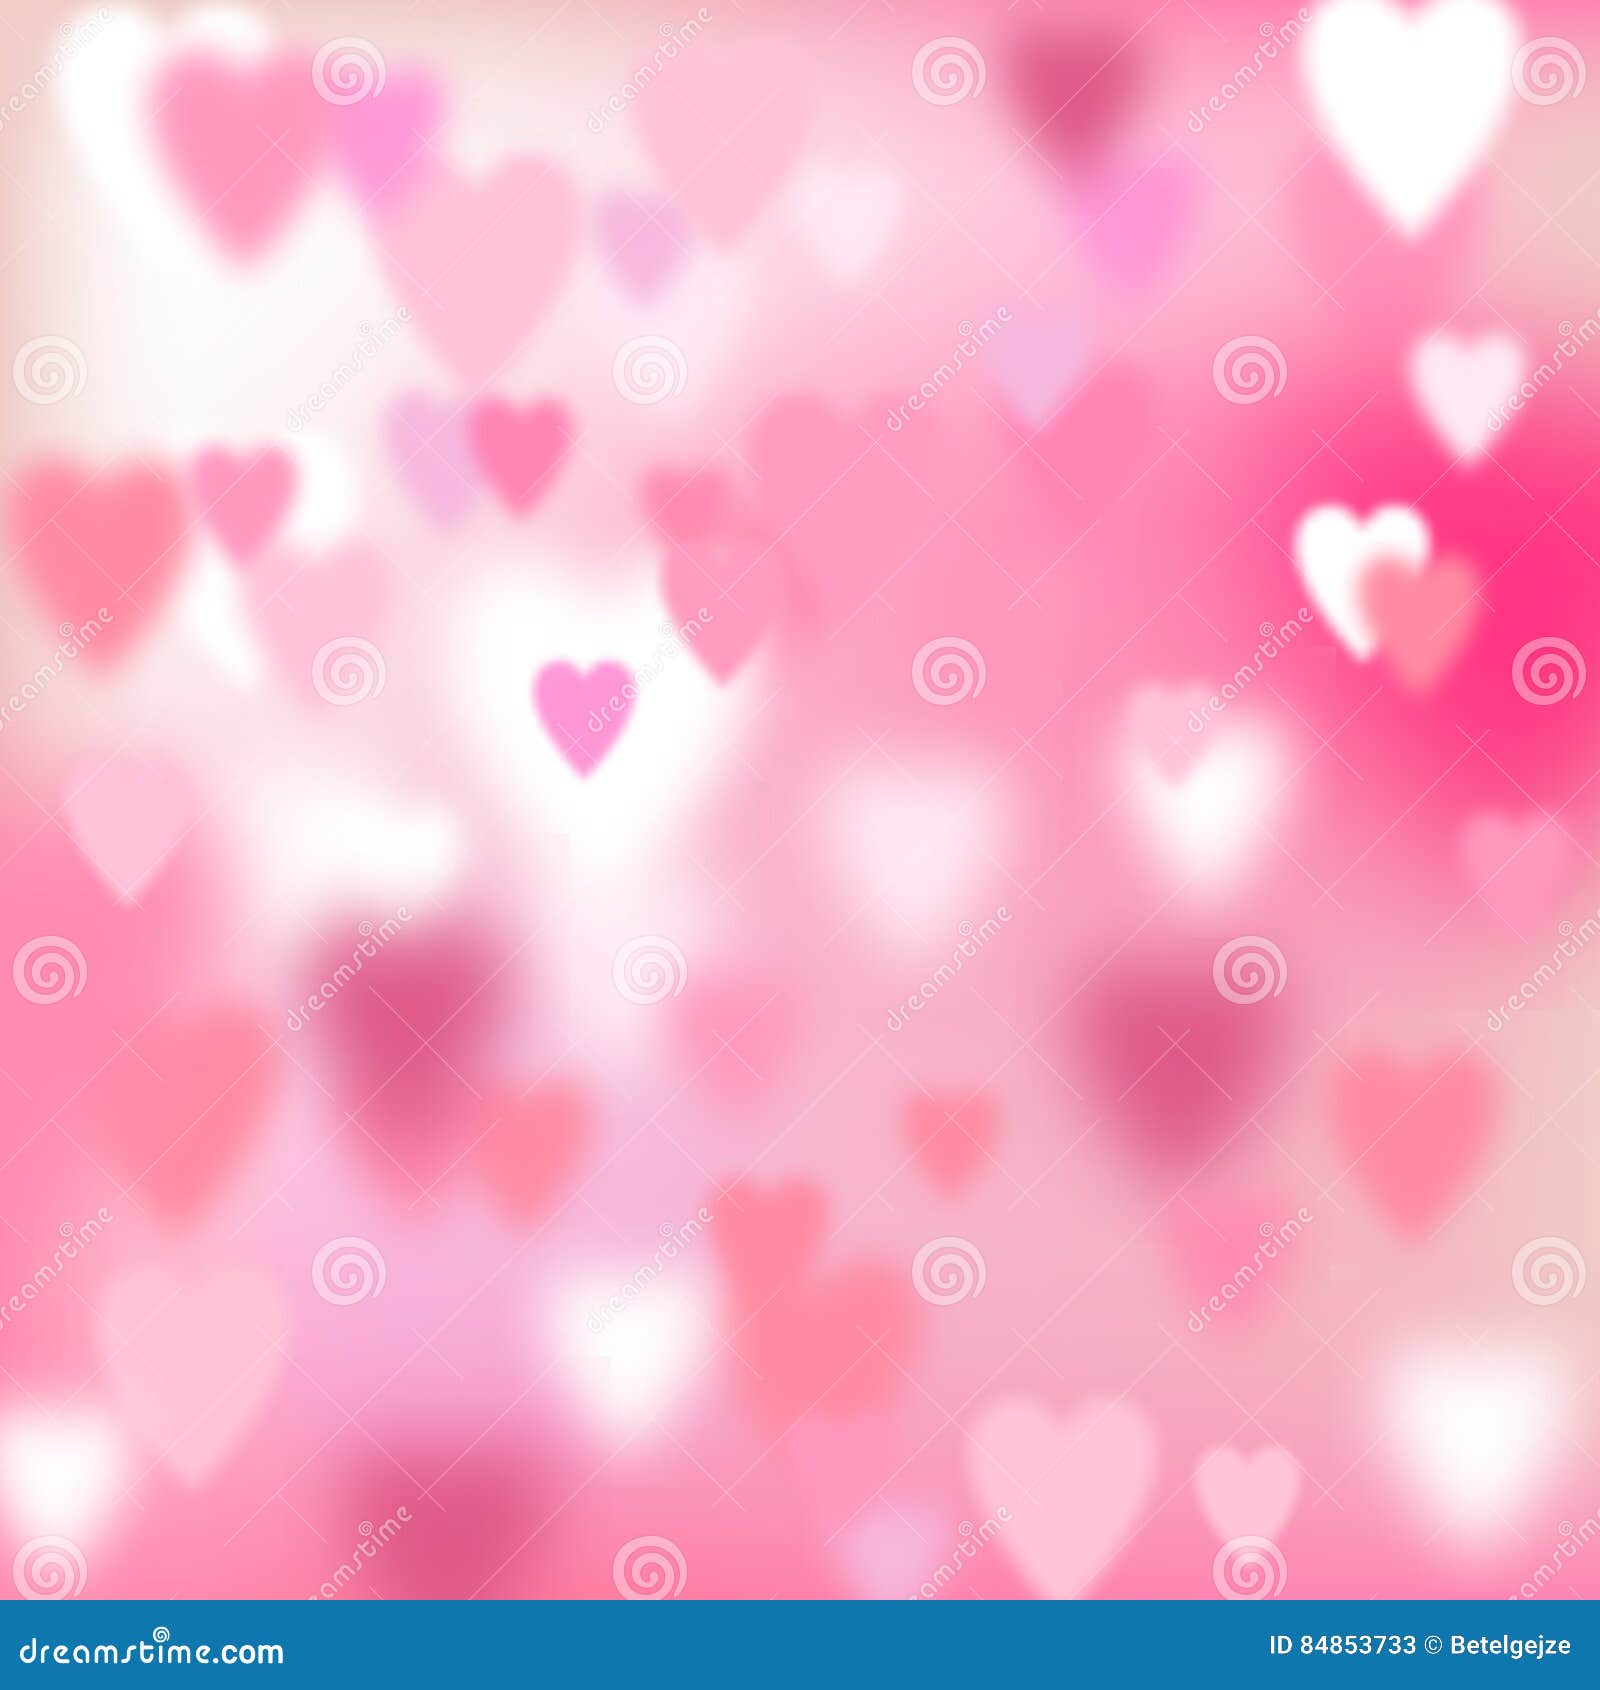 Pink Hearts: Hãy khám phá những trái tim hồng dễ thương trên hình ảnh này, chúng sẽ mang đến cảm giác ấm áp và yêu đời. Light Pink Background: Màu hồng nhạt được biết đến là màu của sự nữ tính và dịu dàng. Hãy xem hình nền màu hồng nhạt này để cảm nhận sự dịu mát, thư giãn và tinh tế. Seamless Pattern: Một mẫu trang trí đẹp và đồng nhất sẽ đem lại vẻ lịch sự và tinh tế cho bất cứ thiết kế nào. Cùng khám phá mẫu vải seamless pattern này và trải nghiệm cảm giác mới lạ. iPhone Wallpaper: Cho đến bây giờ bạn vẫn đang sử dụng hình nền mặc định cho điện thoại của mình? Hãy thử xem bộ sưu tập hình nền iPhone này để tìm kiếm sự khác biệt, sáng tạo và độc đáo.